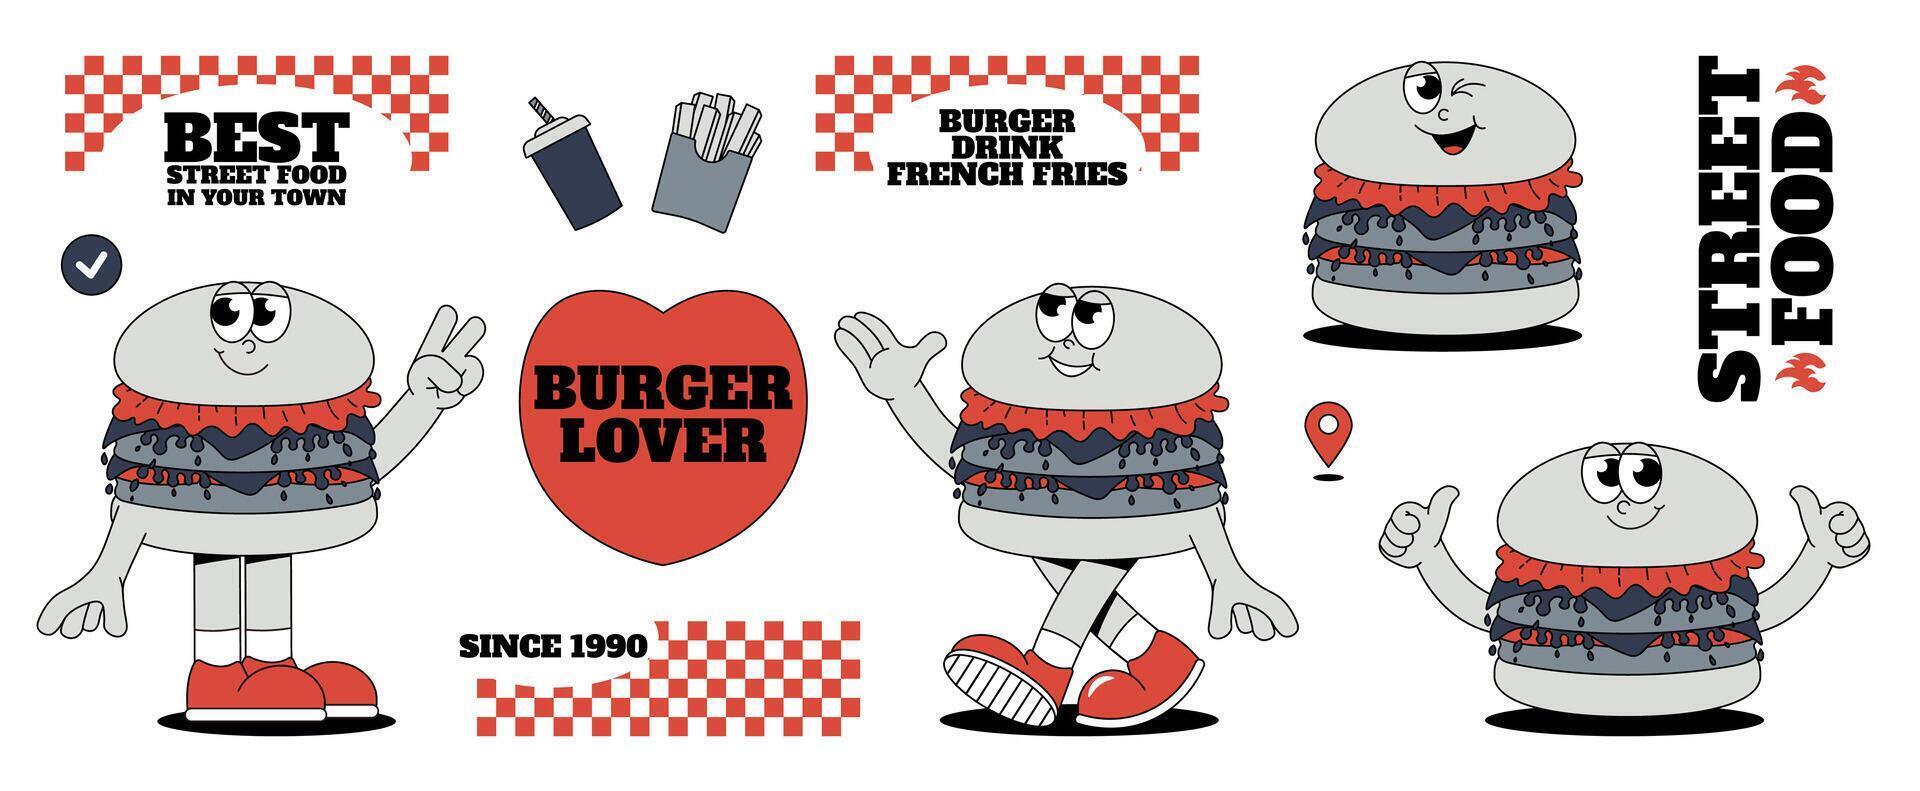 un hamburguesa entrega tema conjunto en el de moda retro maravilloso estilo. hamburguesa personaje, pegatinas con palabras, reajuste salarial beber, francés papas fritas y rápido entrega. Arte vector